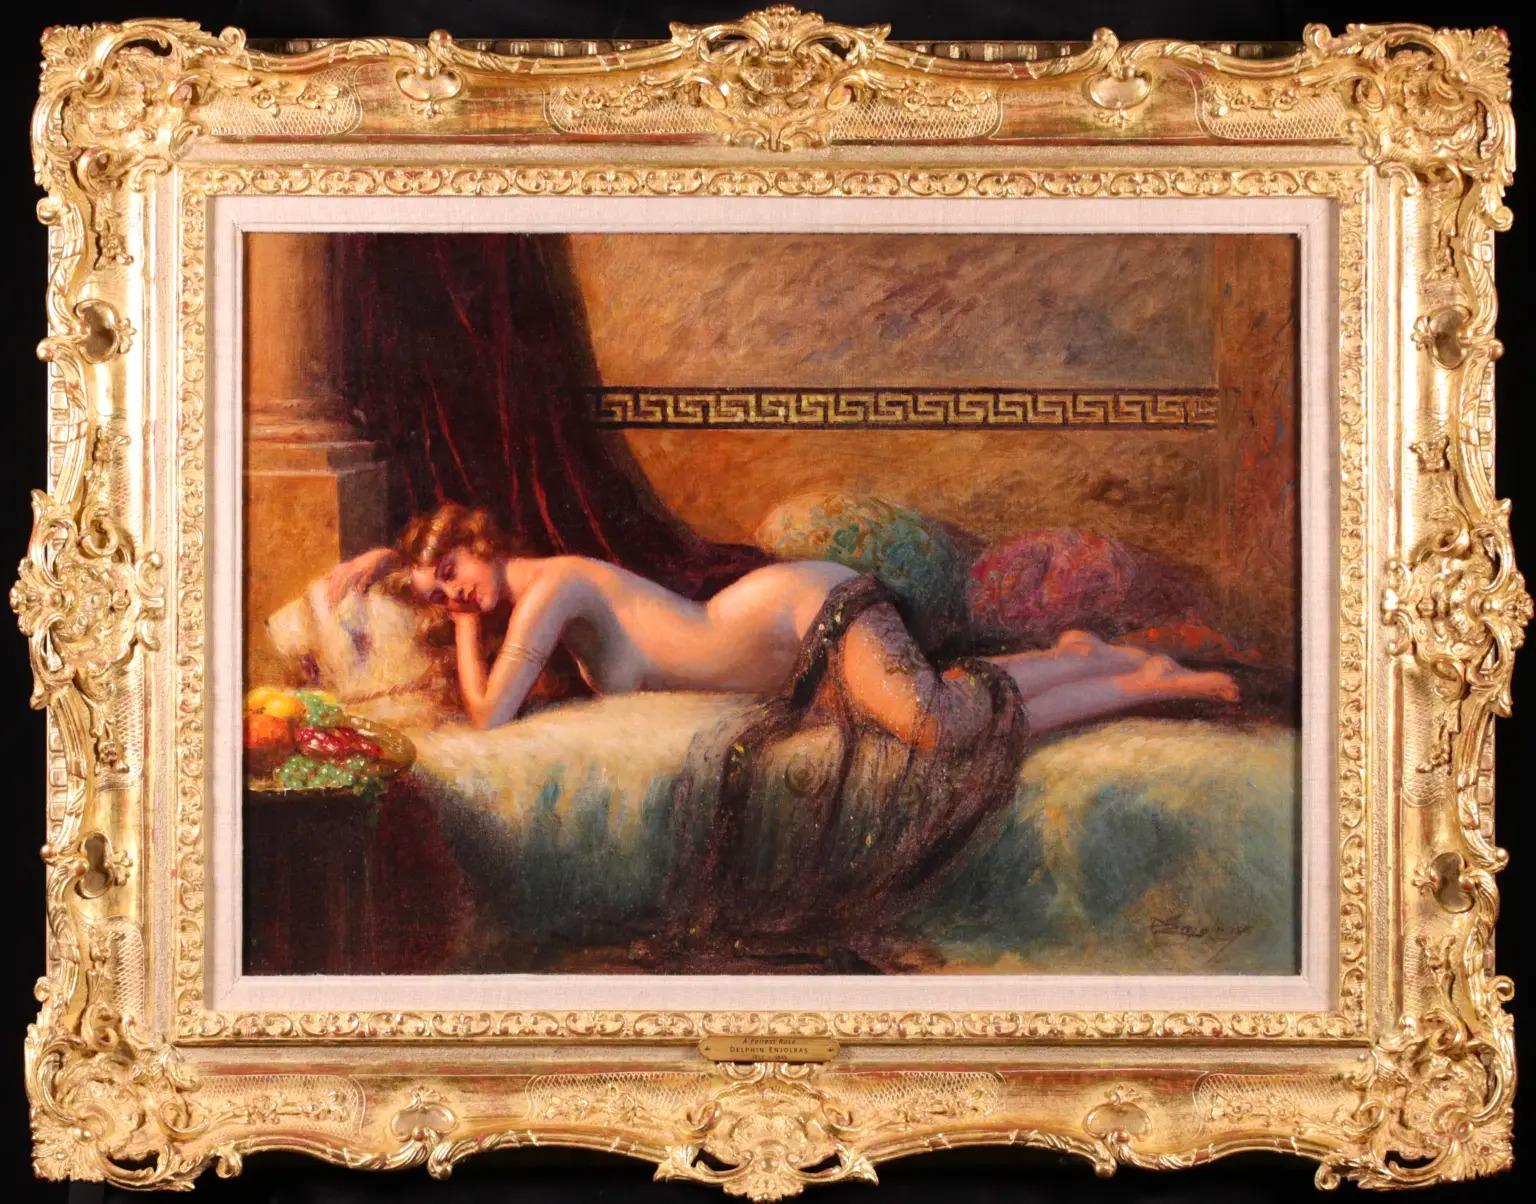 Nu d'intérieur signé huile sur toile circa 1900 par le peintre académique français Delphin Enjolras. L'œuvre représente une nue aux cheveux roux reposant sur un lit dans un boudoir luxuriant, drapée d'une écharpe transparente. Un rideau de velours